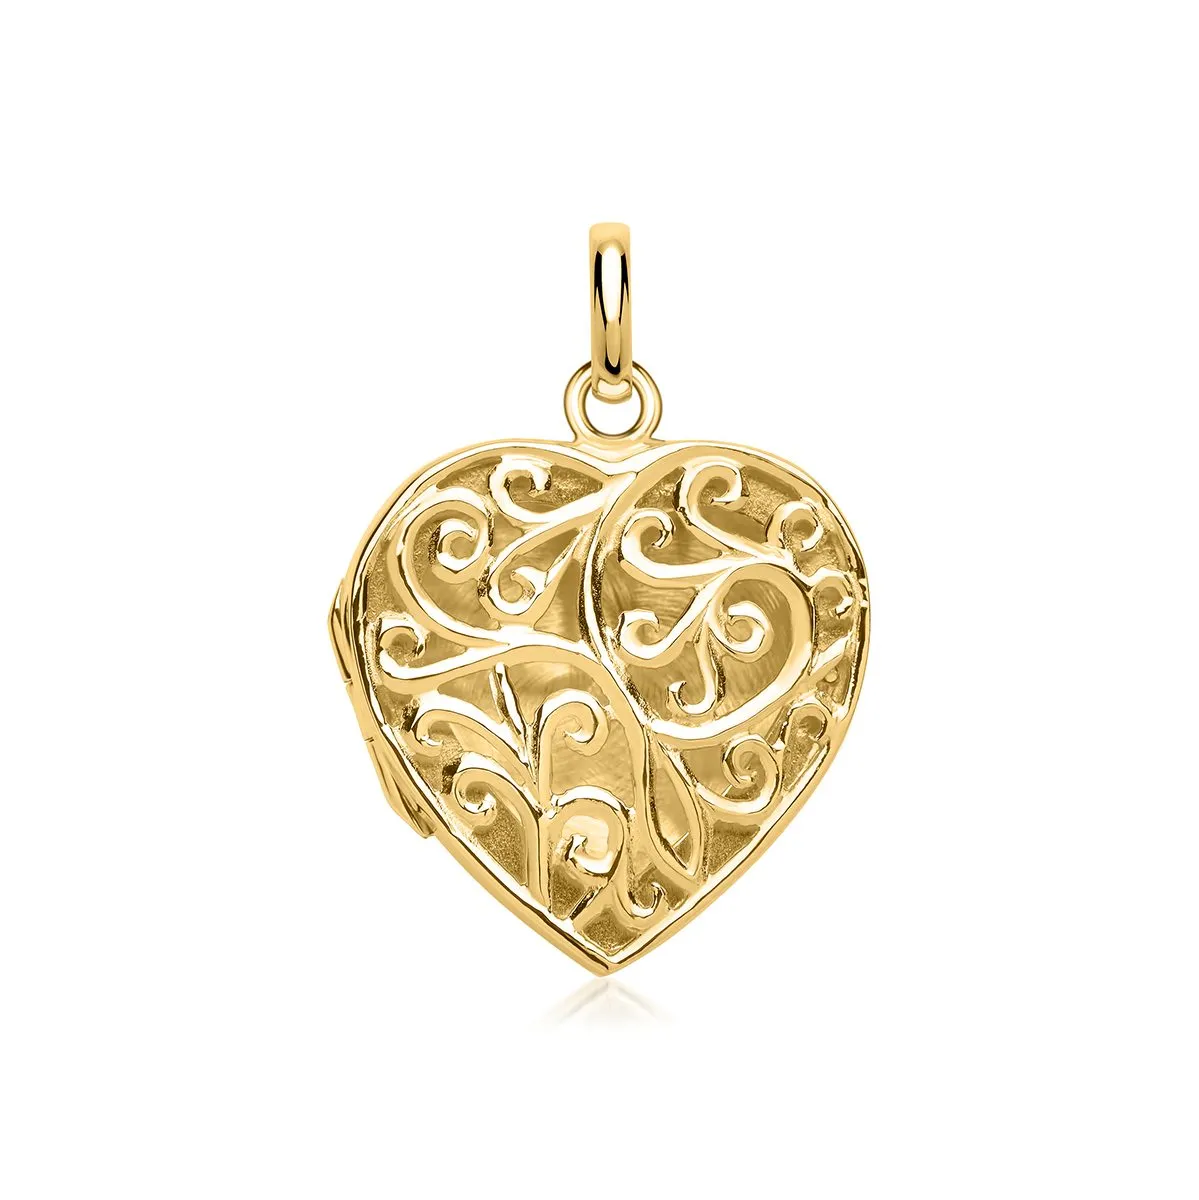 Herzmedaillon mit Ornamenten und Gravur - Gold